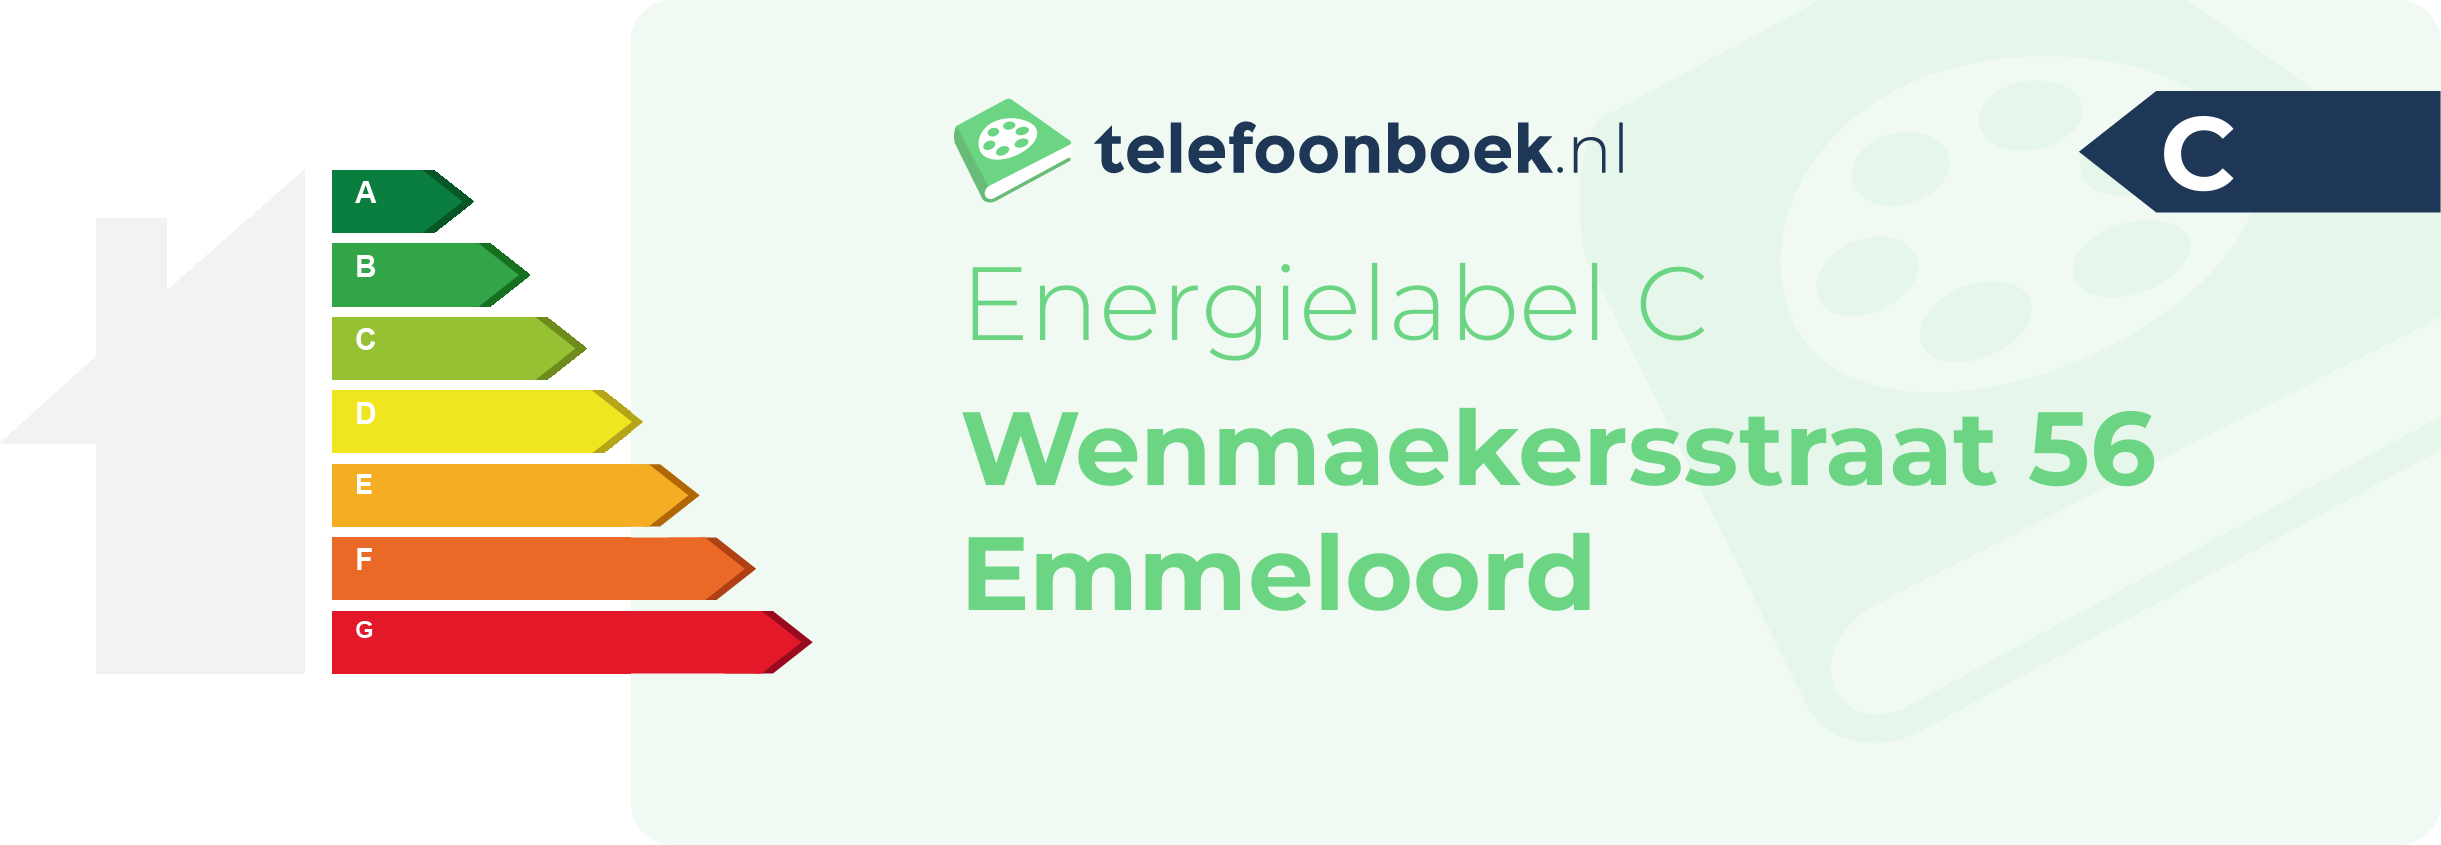 Energielabel Wenmaekersstraat 56 Emmeloord